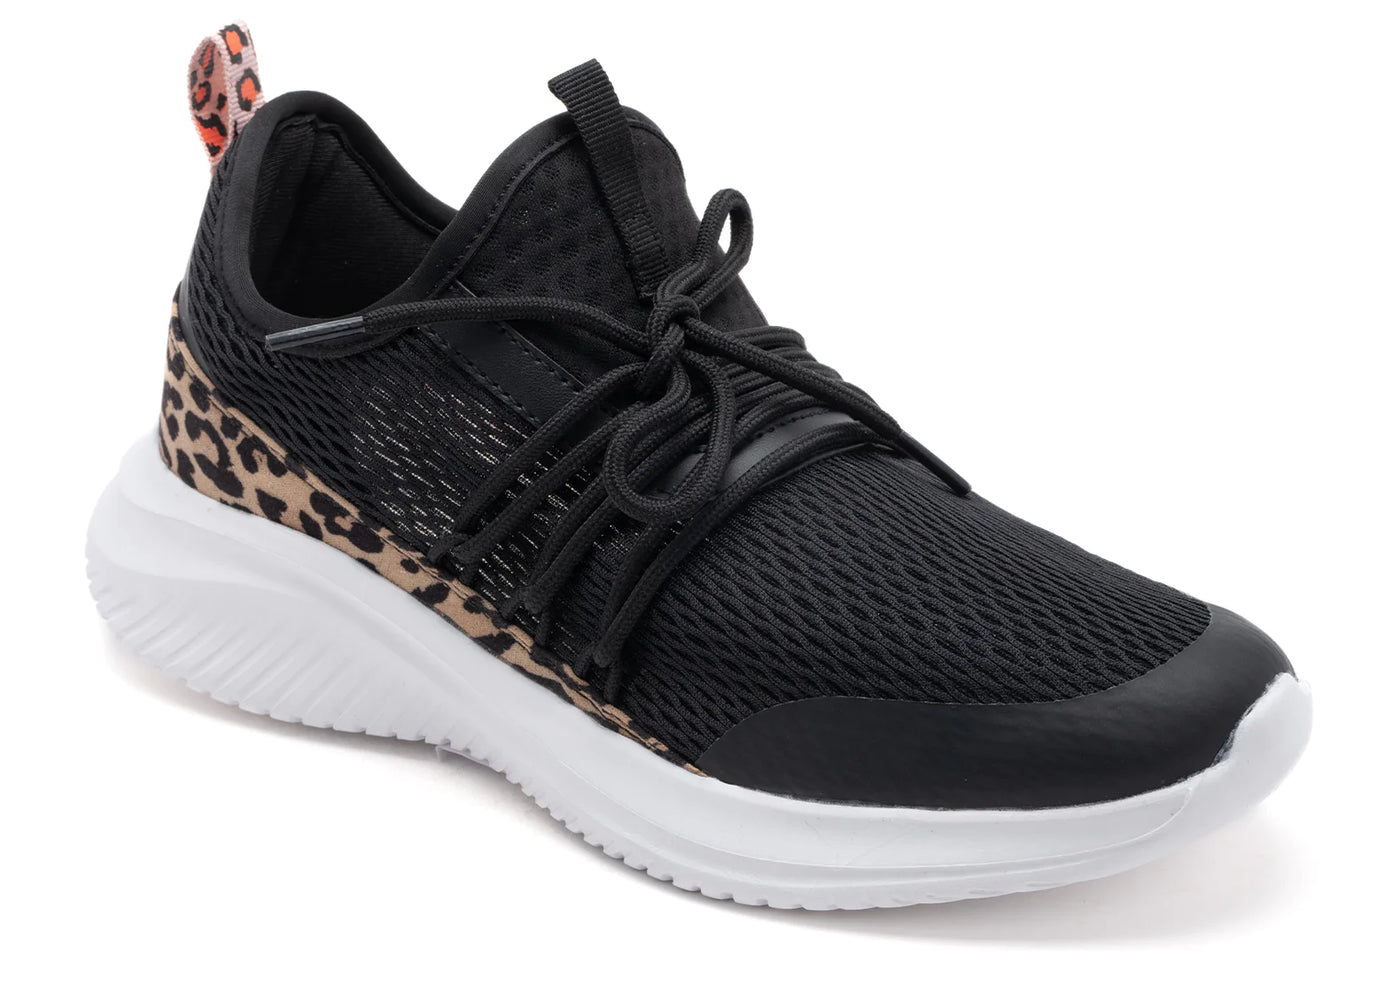 Corkys Women's Soft Serve Black w/Leopard Tennis Shoes